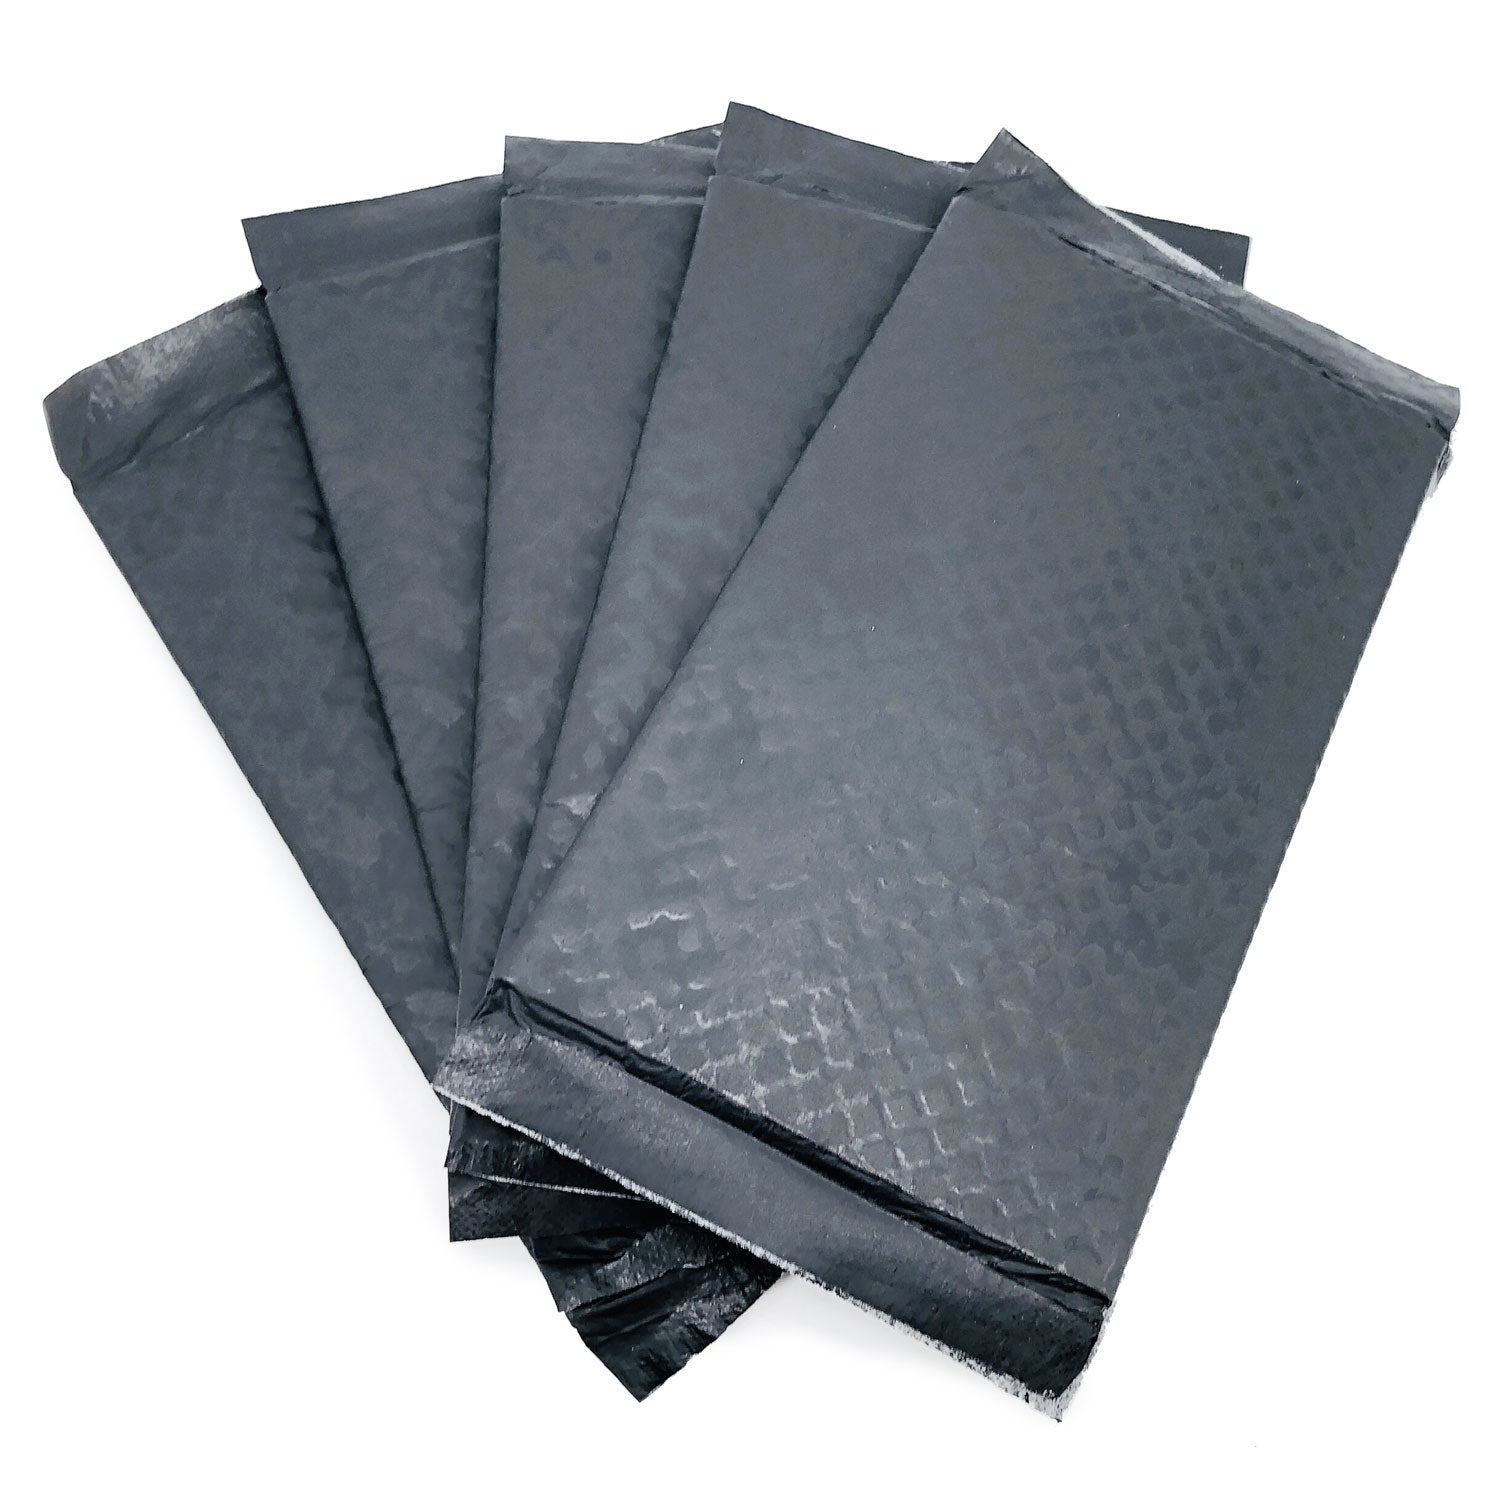 ValuePad Plus Cat Litter Pads, 16.9x11.4 Inch, Carbon, 200 Count - Breeze Compatible Refills BULK PACK